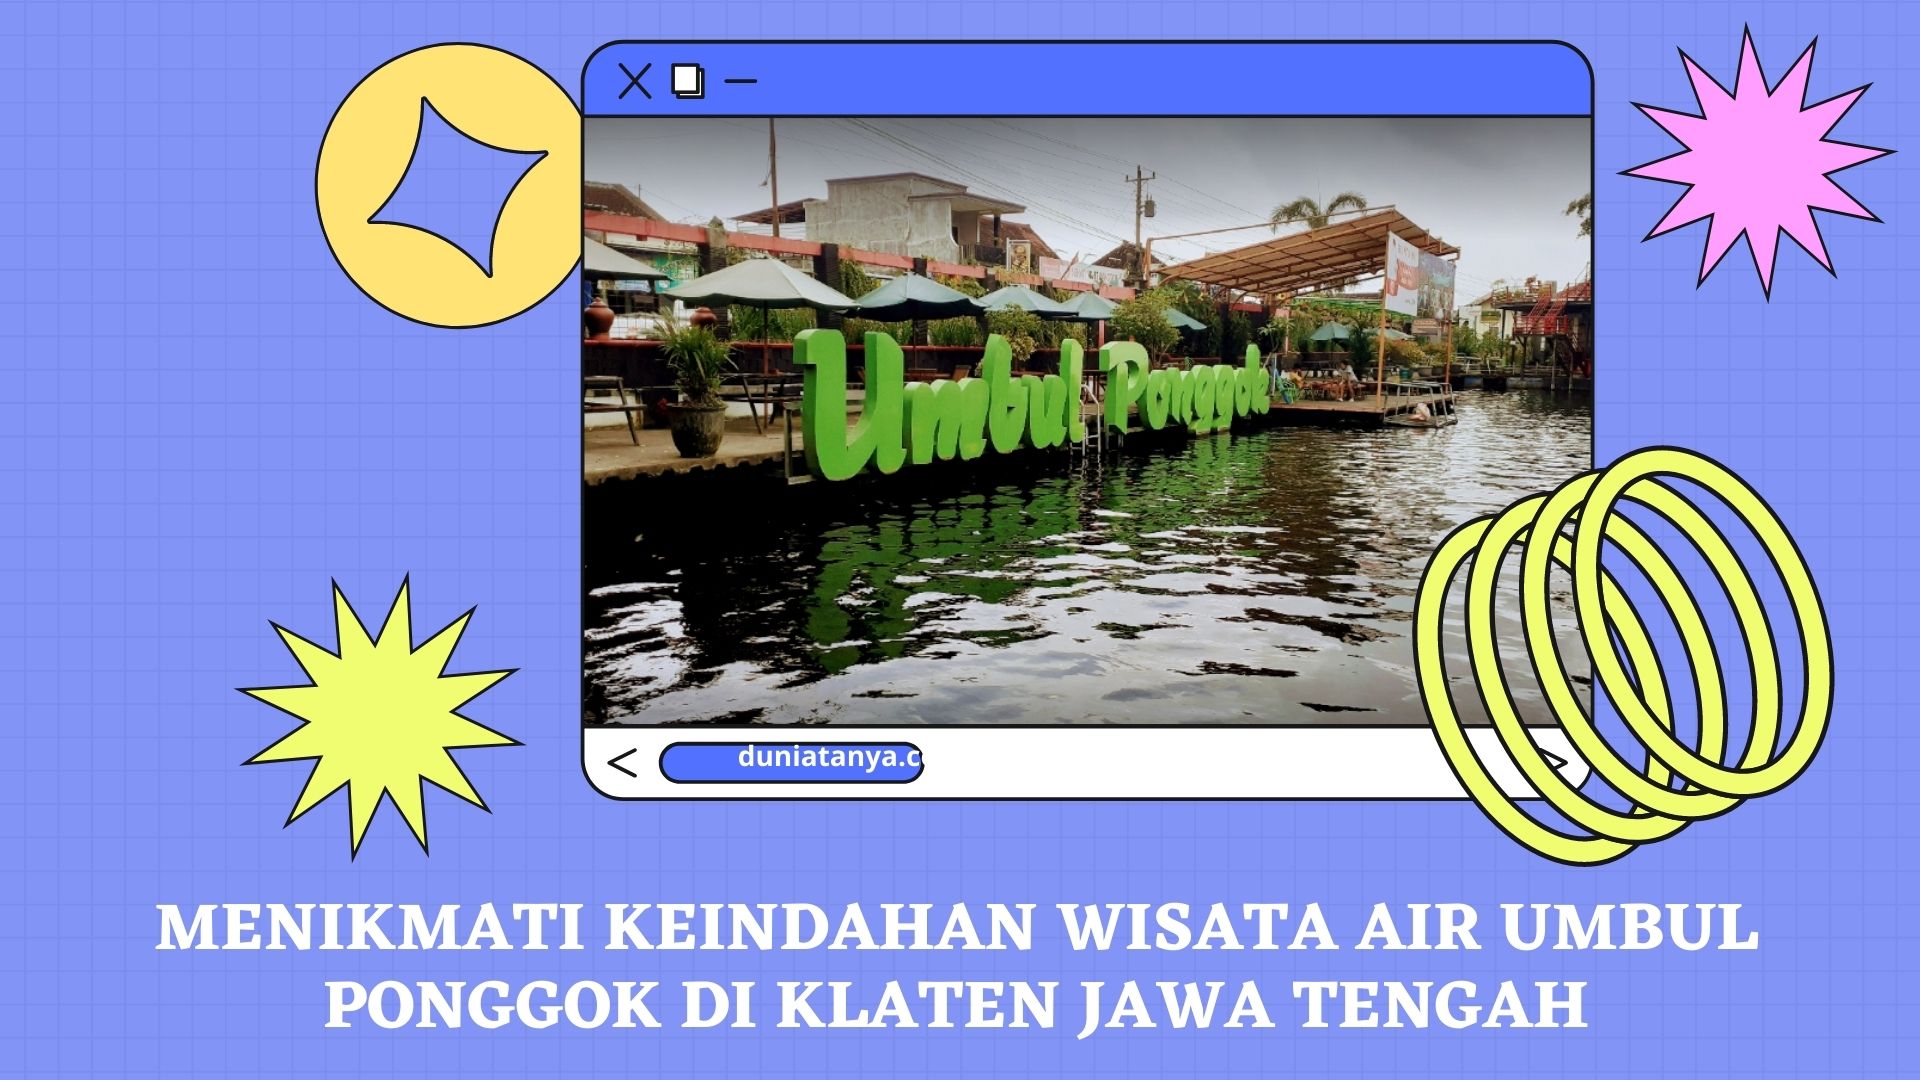 You are currently viewing Menikmati Keindahan Wisata Air Umbul Ponggok Di Klaten Jawa Tengah